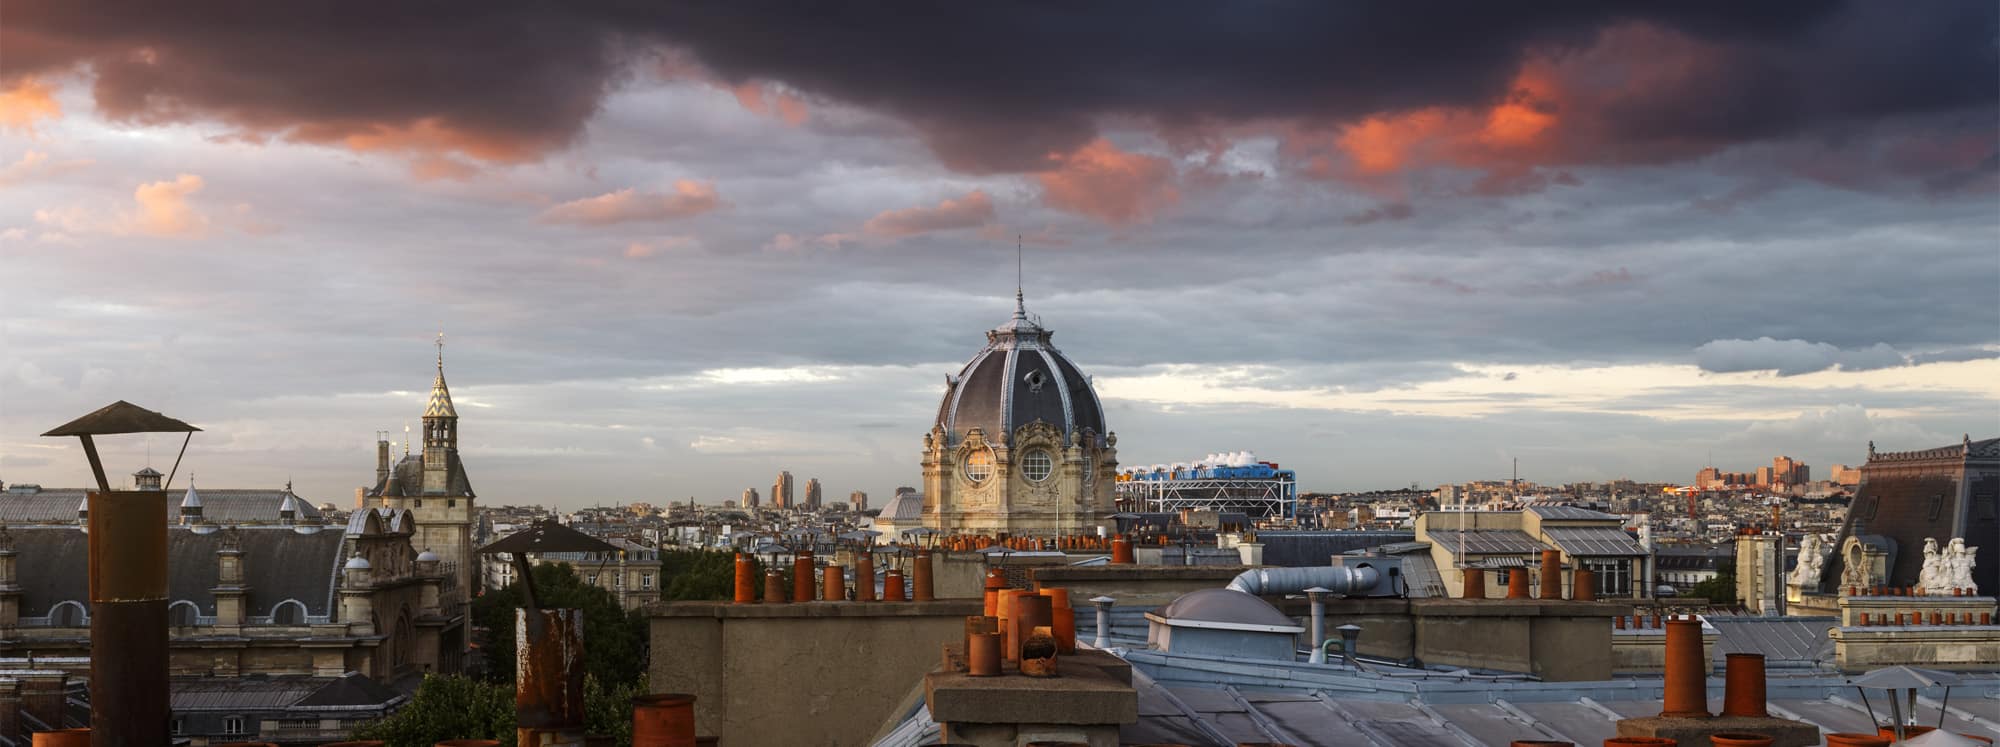 fromentin julien photographie cours photo panorama toits paris conciergerie tribunal de commerce